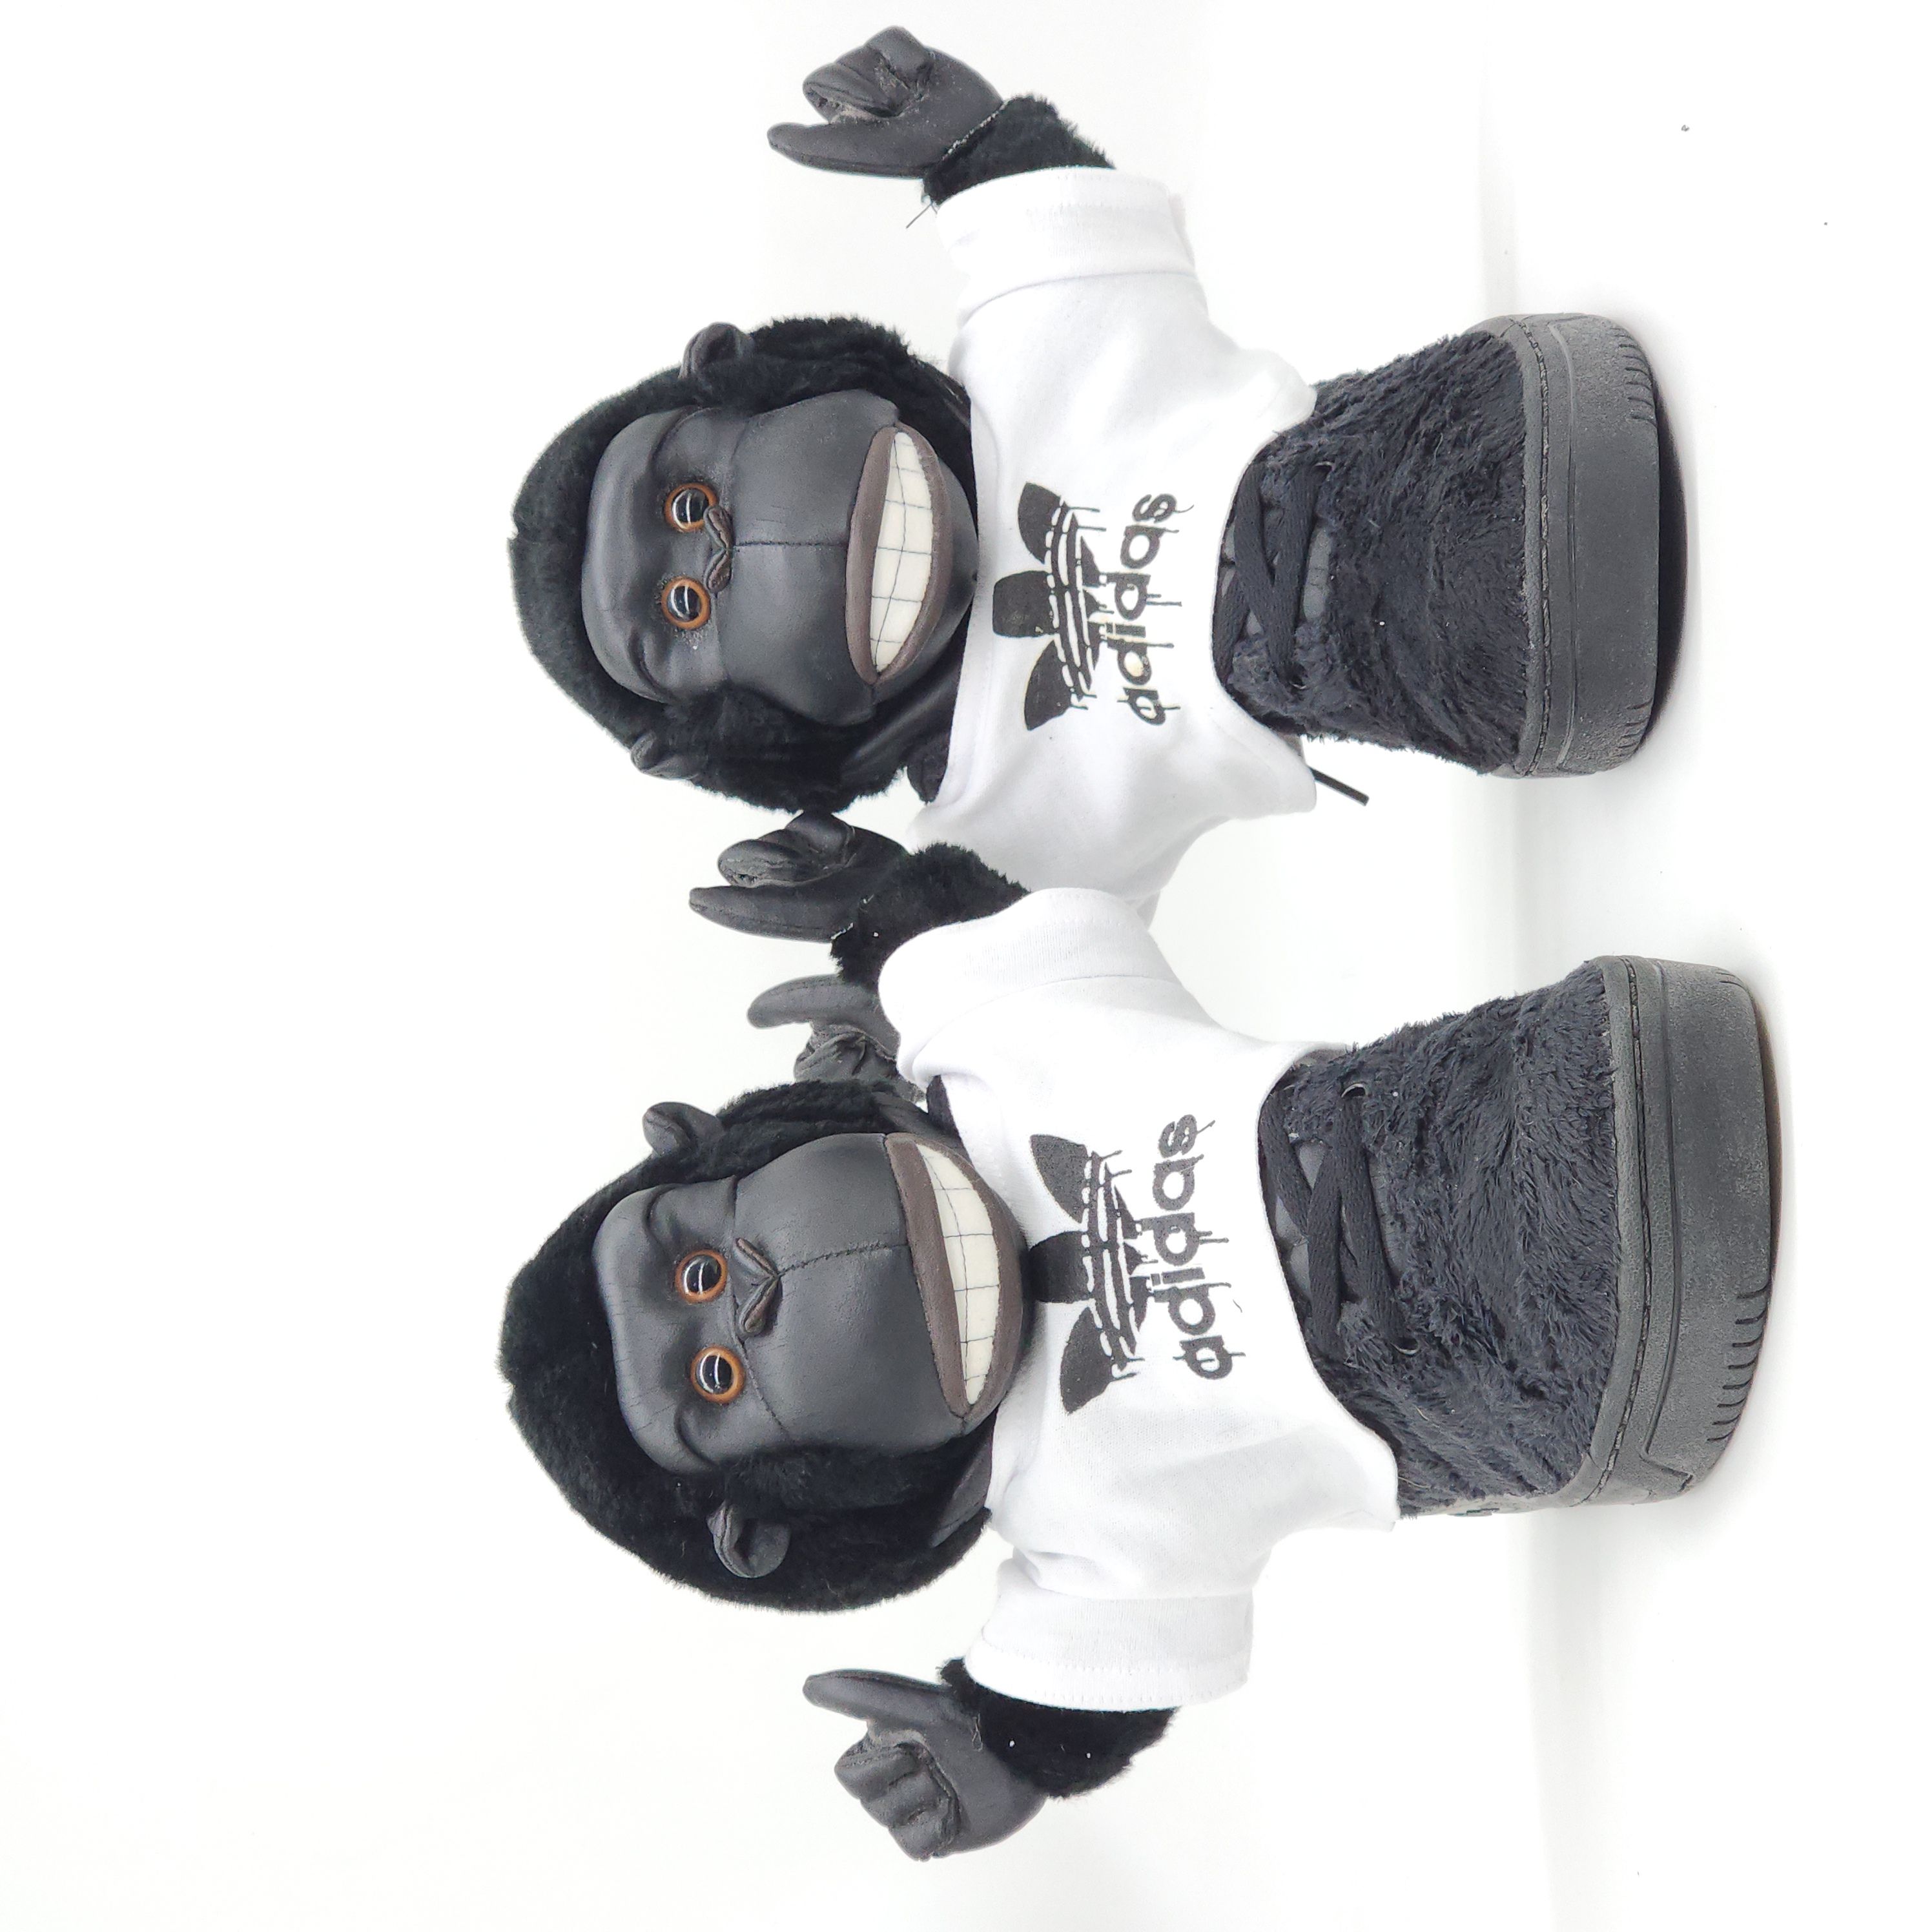 Adidas x Jeremy Scott - Gorilla Sneakers "2 Chainz" - 1